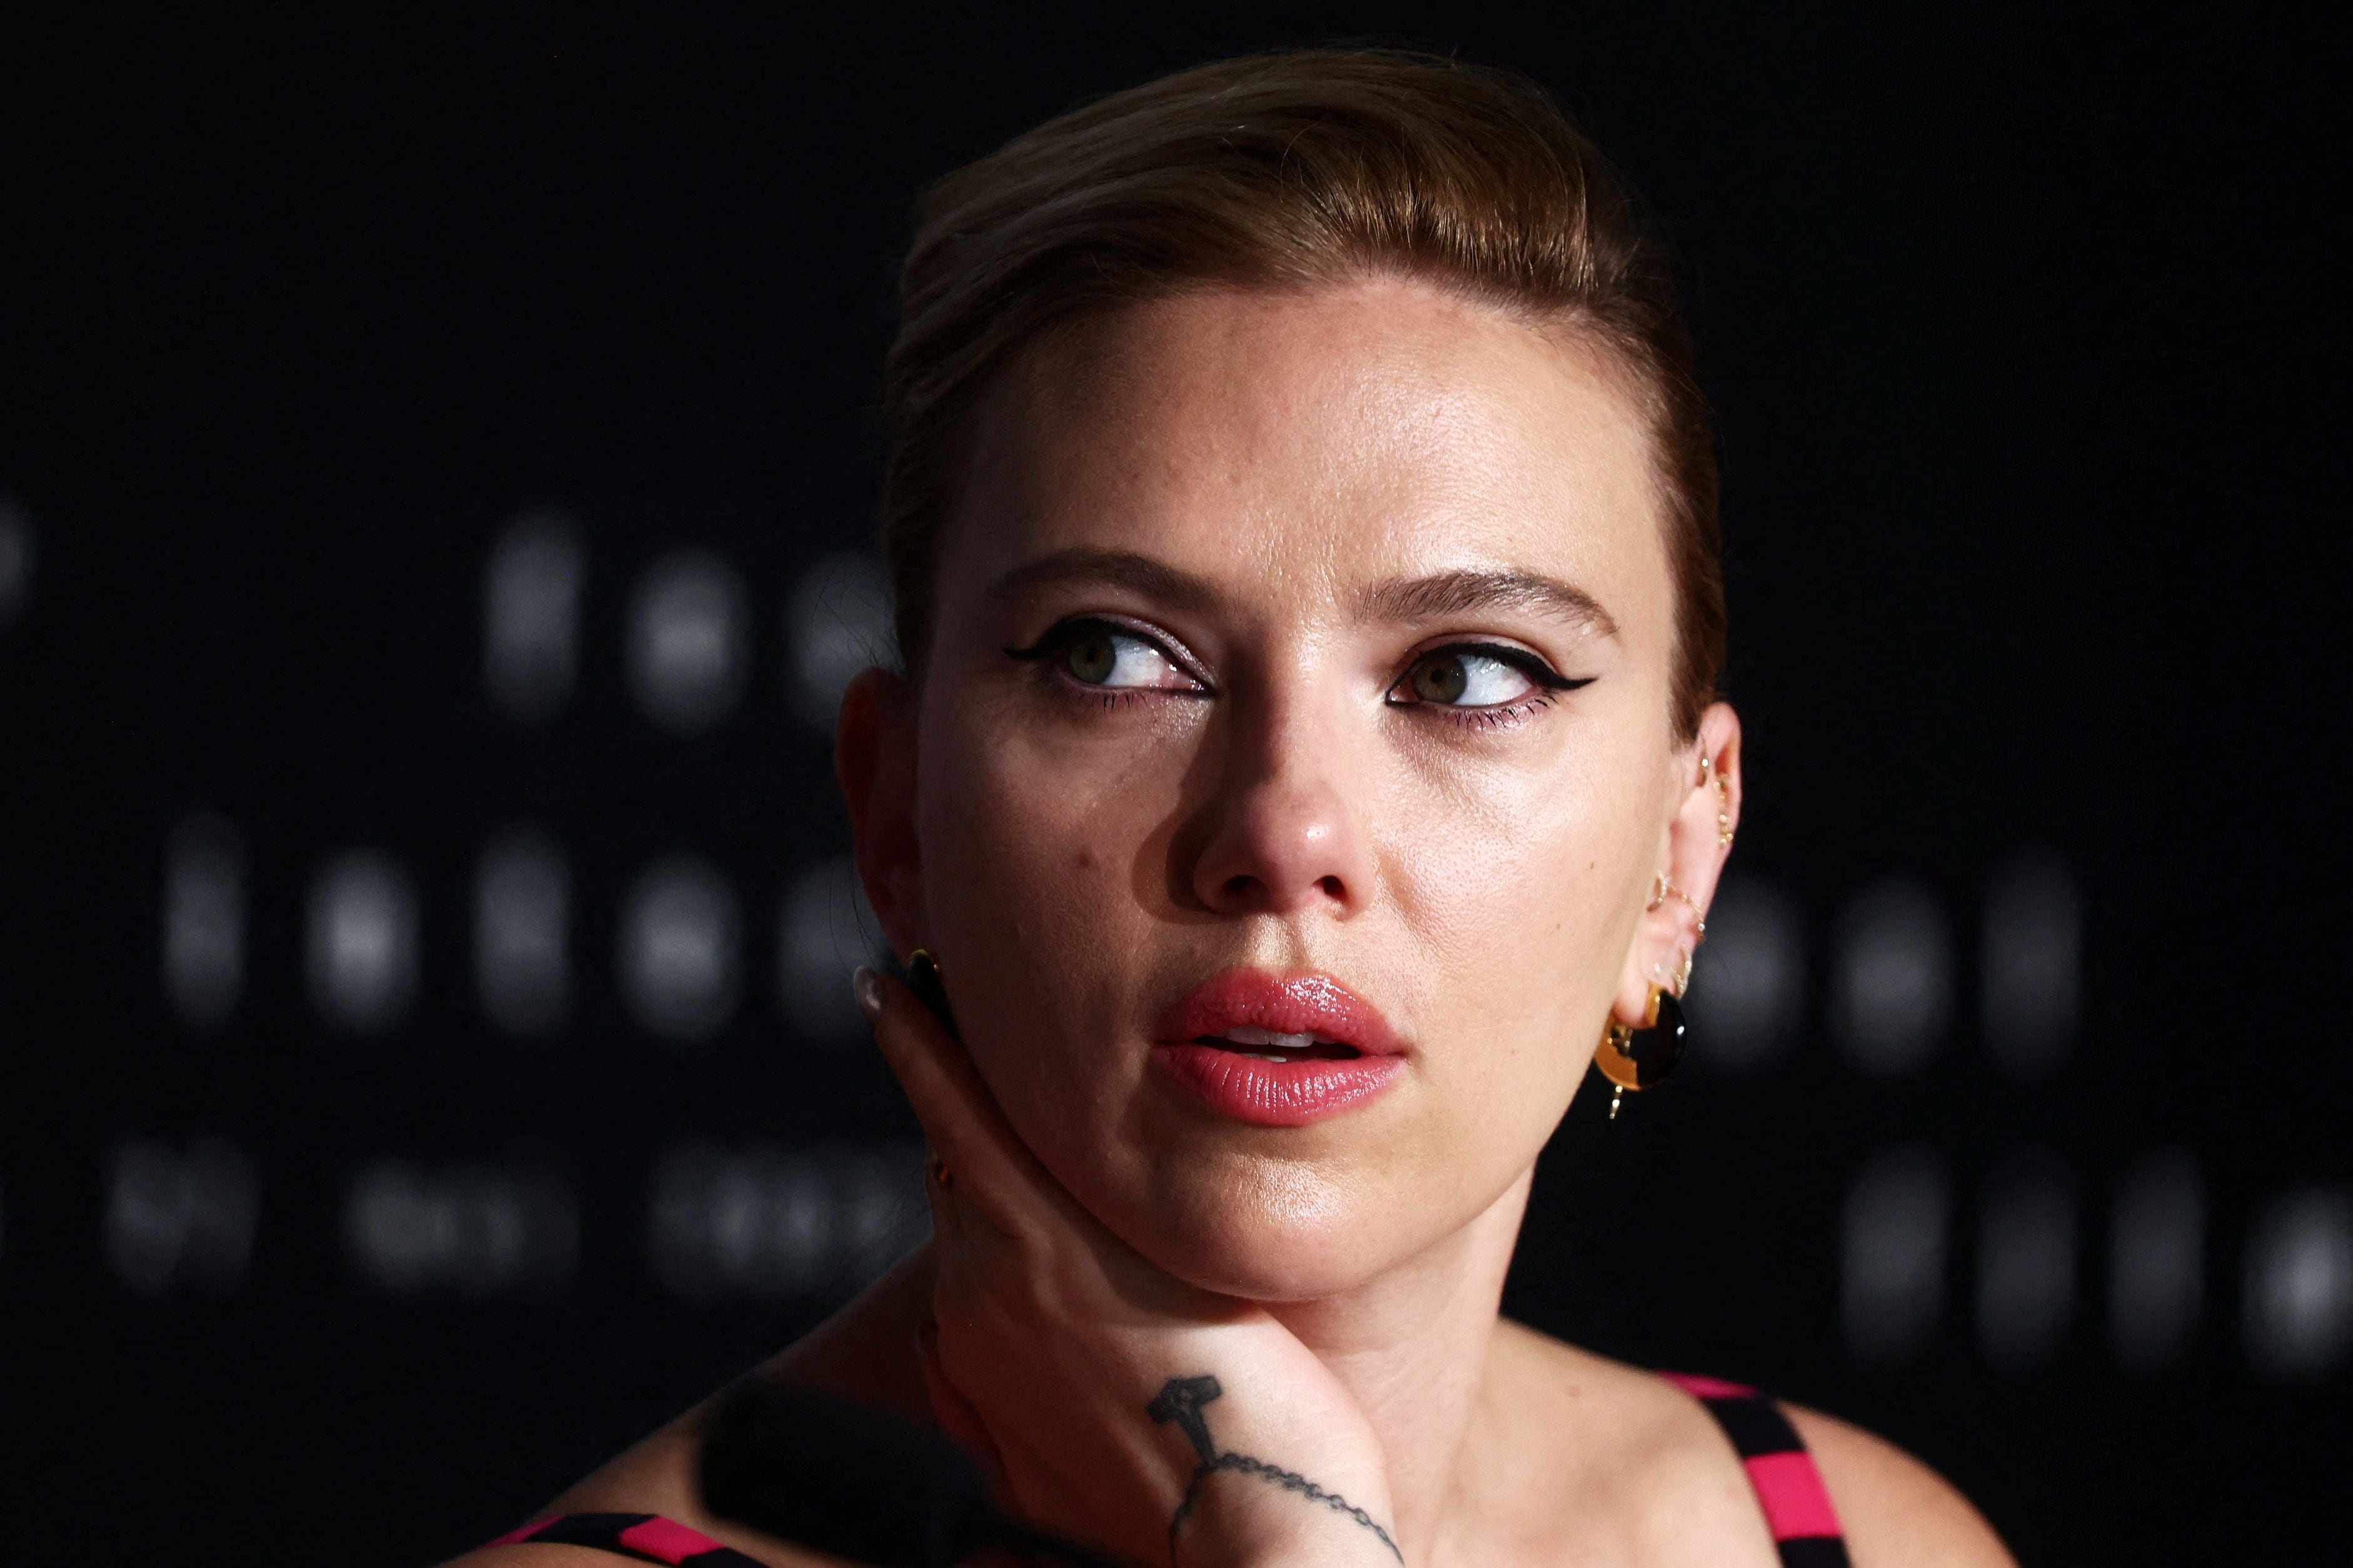 Una actriz diferente, no Scarlett Johansson, proporcionó la voz de “Sky”, según OpenAI. (REUTERS/Yara Nardi)